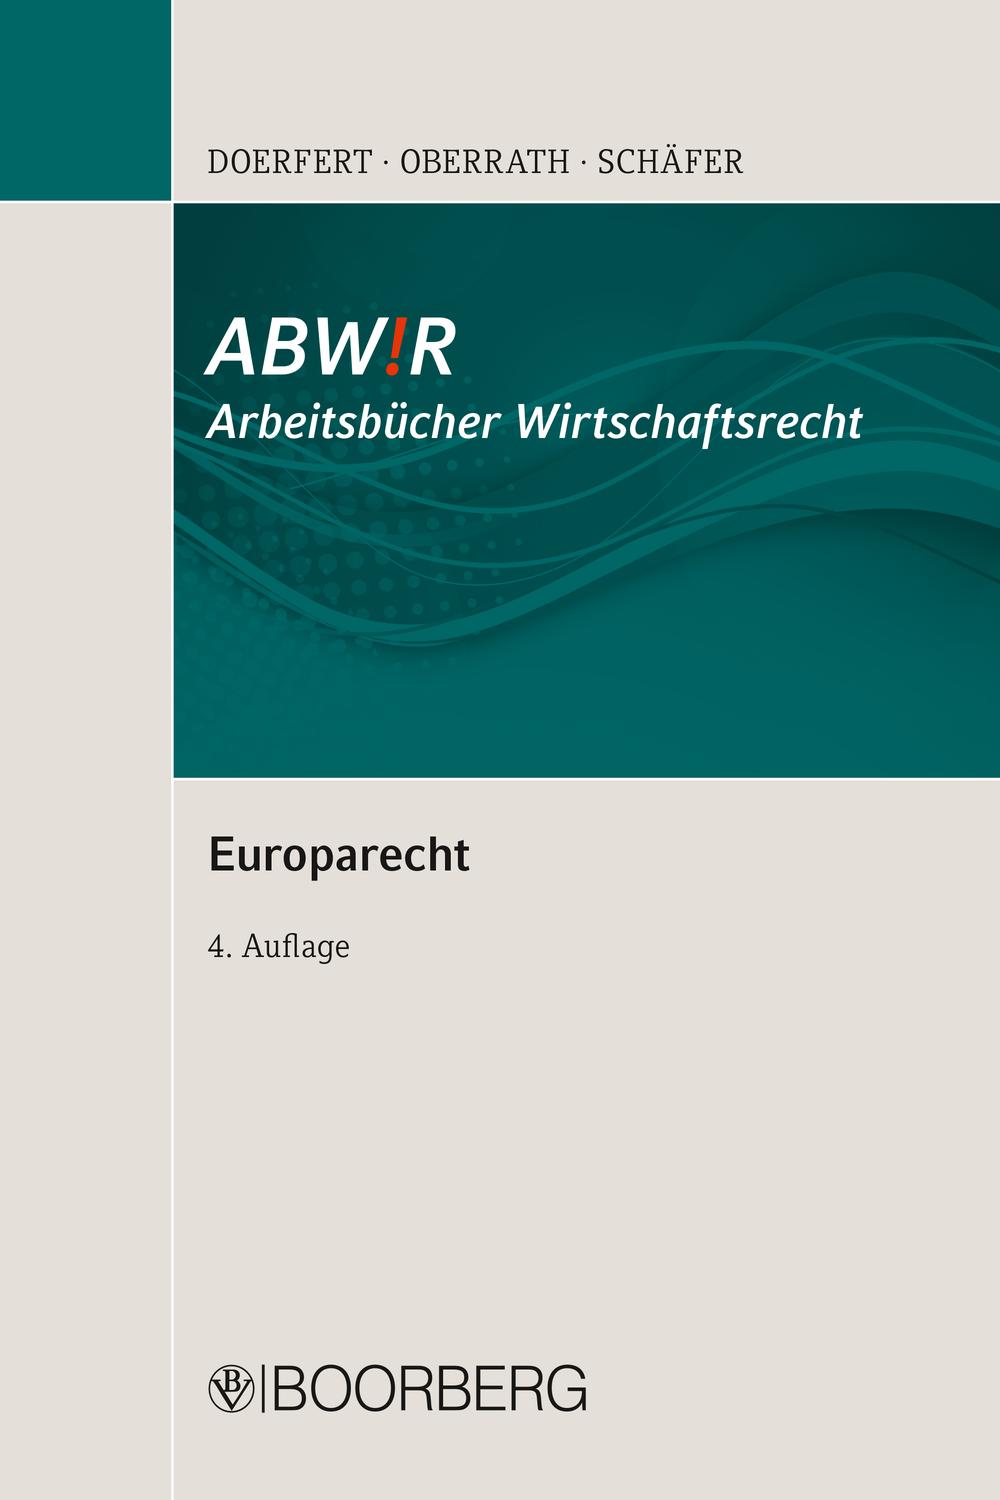 Europarecht - Carsten Doerfert, Jörg-Dieter Oberrath, Peter Schäfer